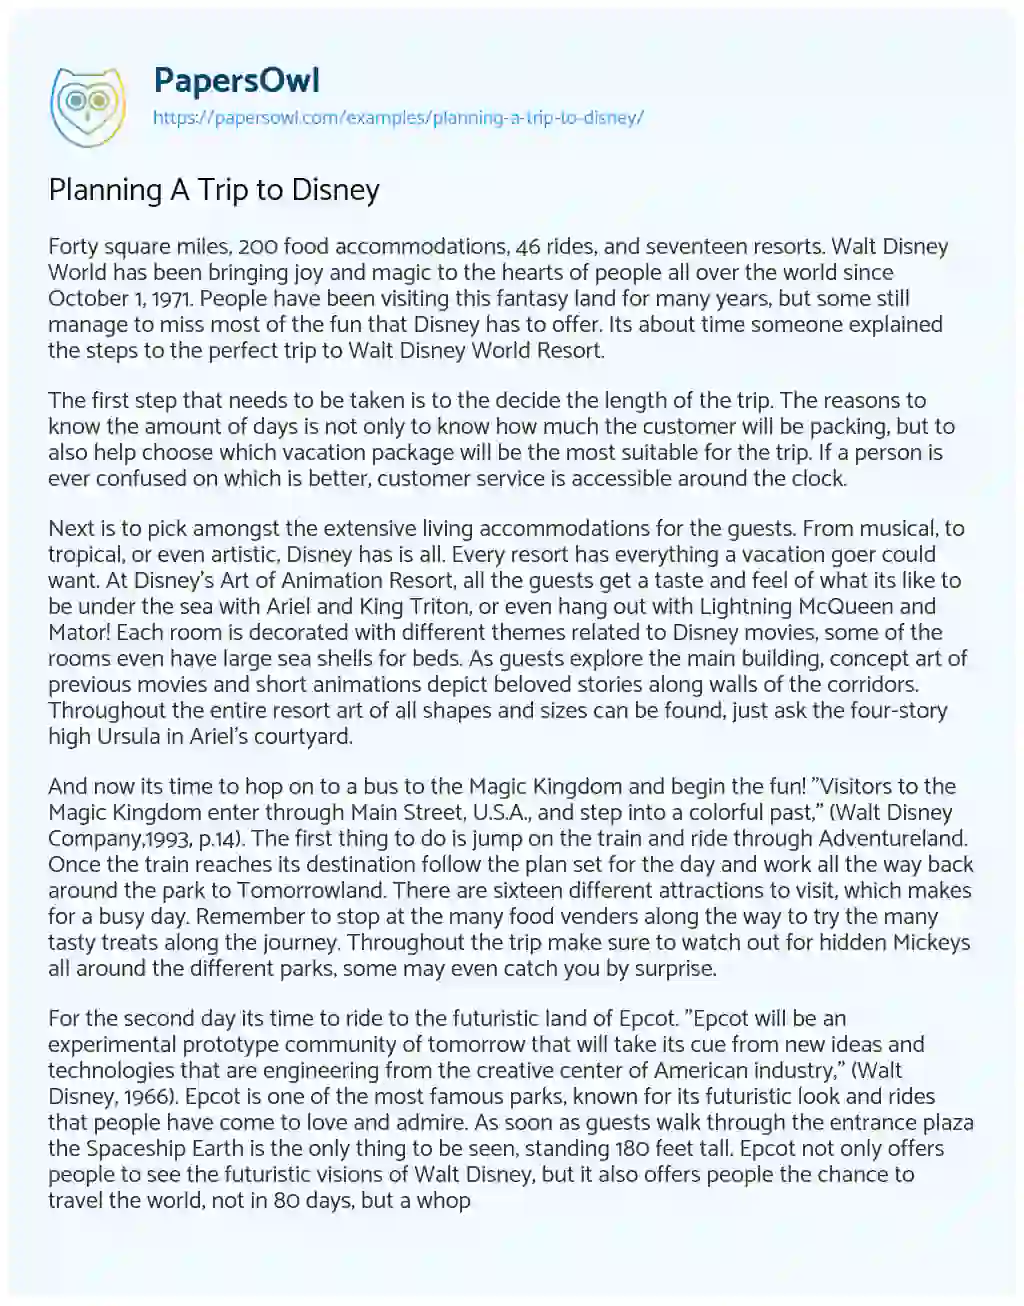 Planning a Trip to Disney essay